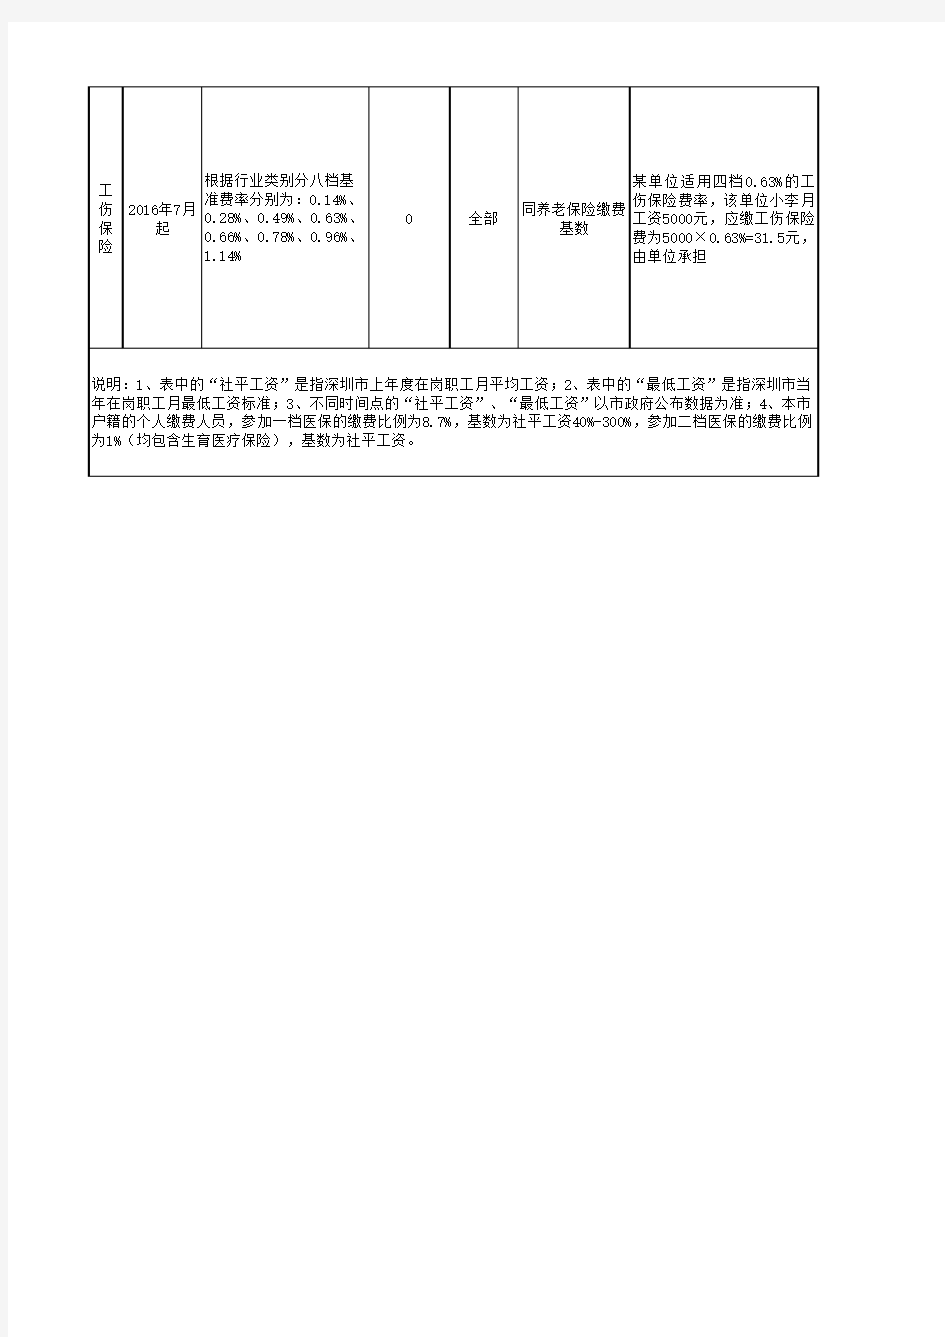 深圳市在职人员社会保险缴费比例及缴费基数表(2018年8月起)